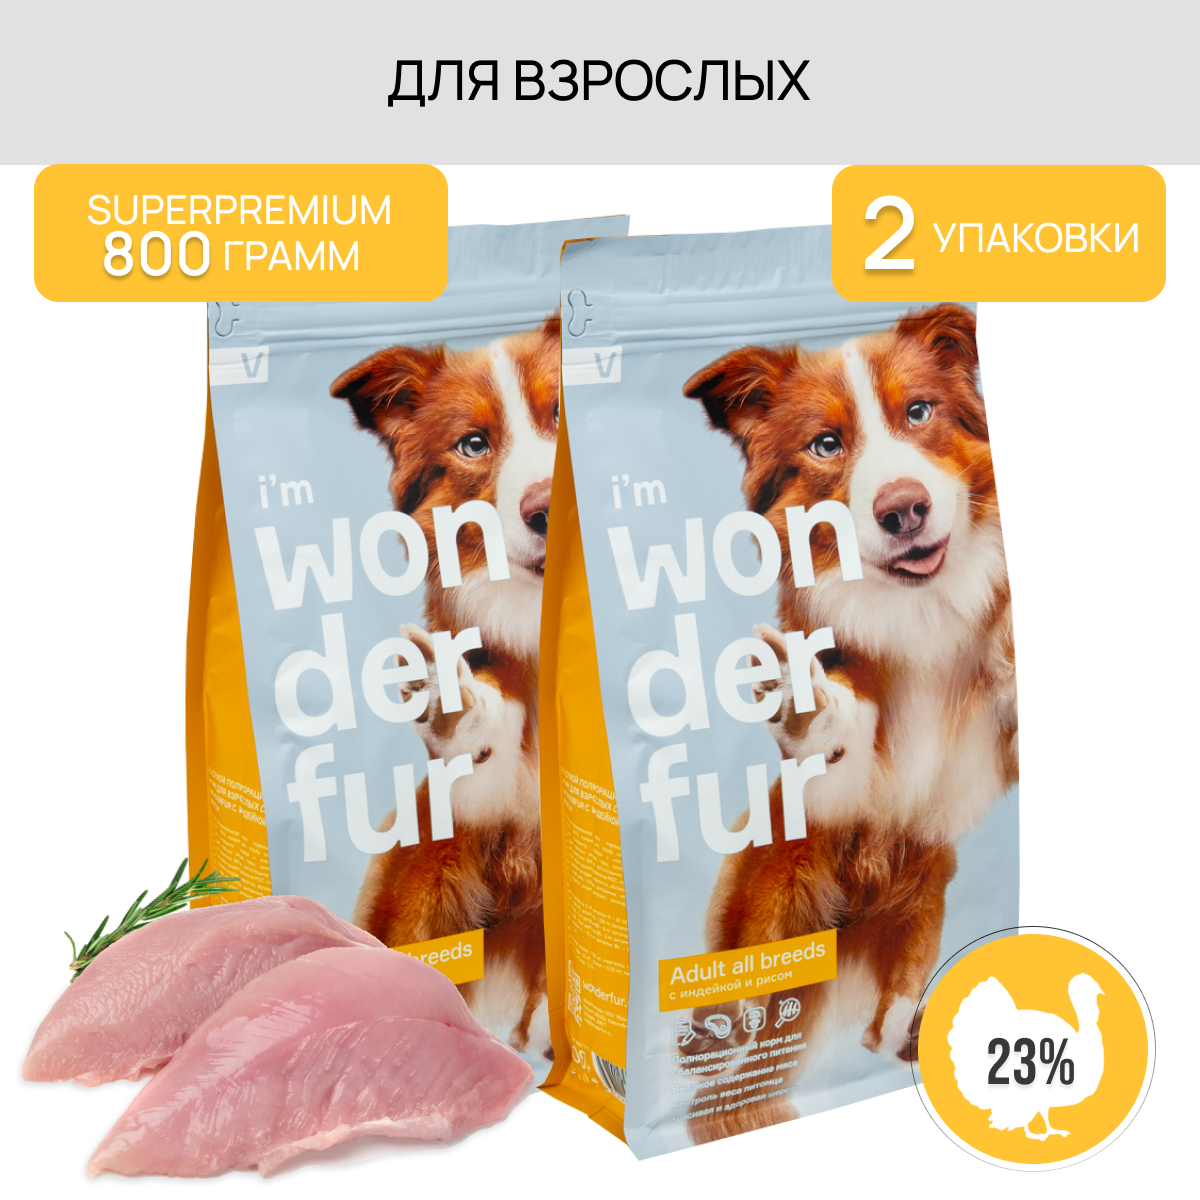 Сухой корм для взрослых собак средних и крупных пород супер-премиум класса WONDERFUR со вкусом индейки и риса, 1.6 кг